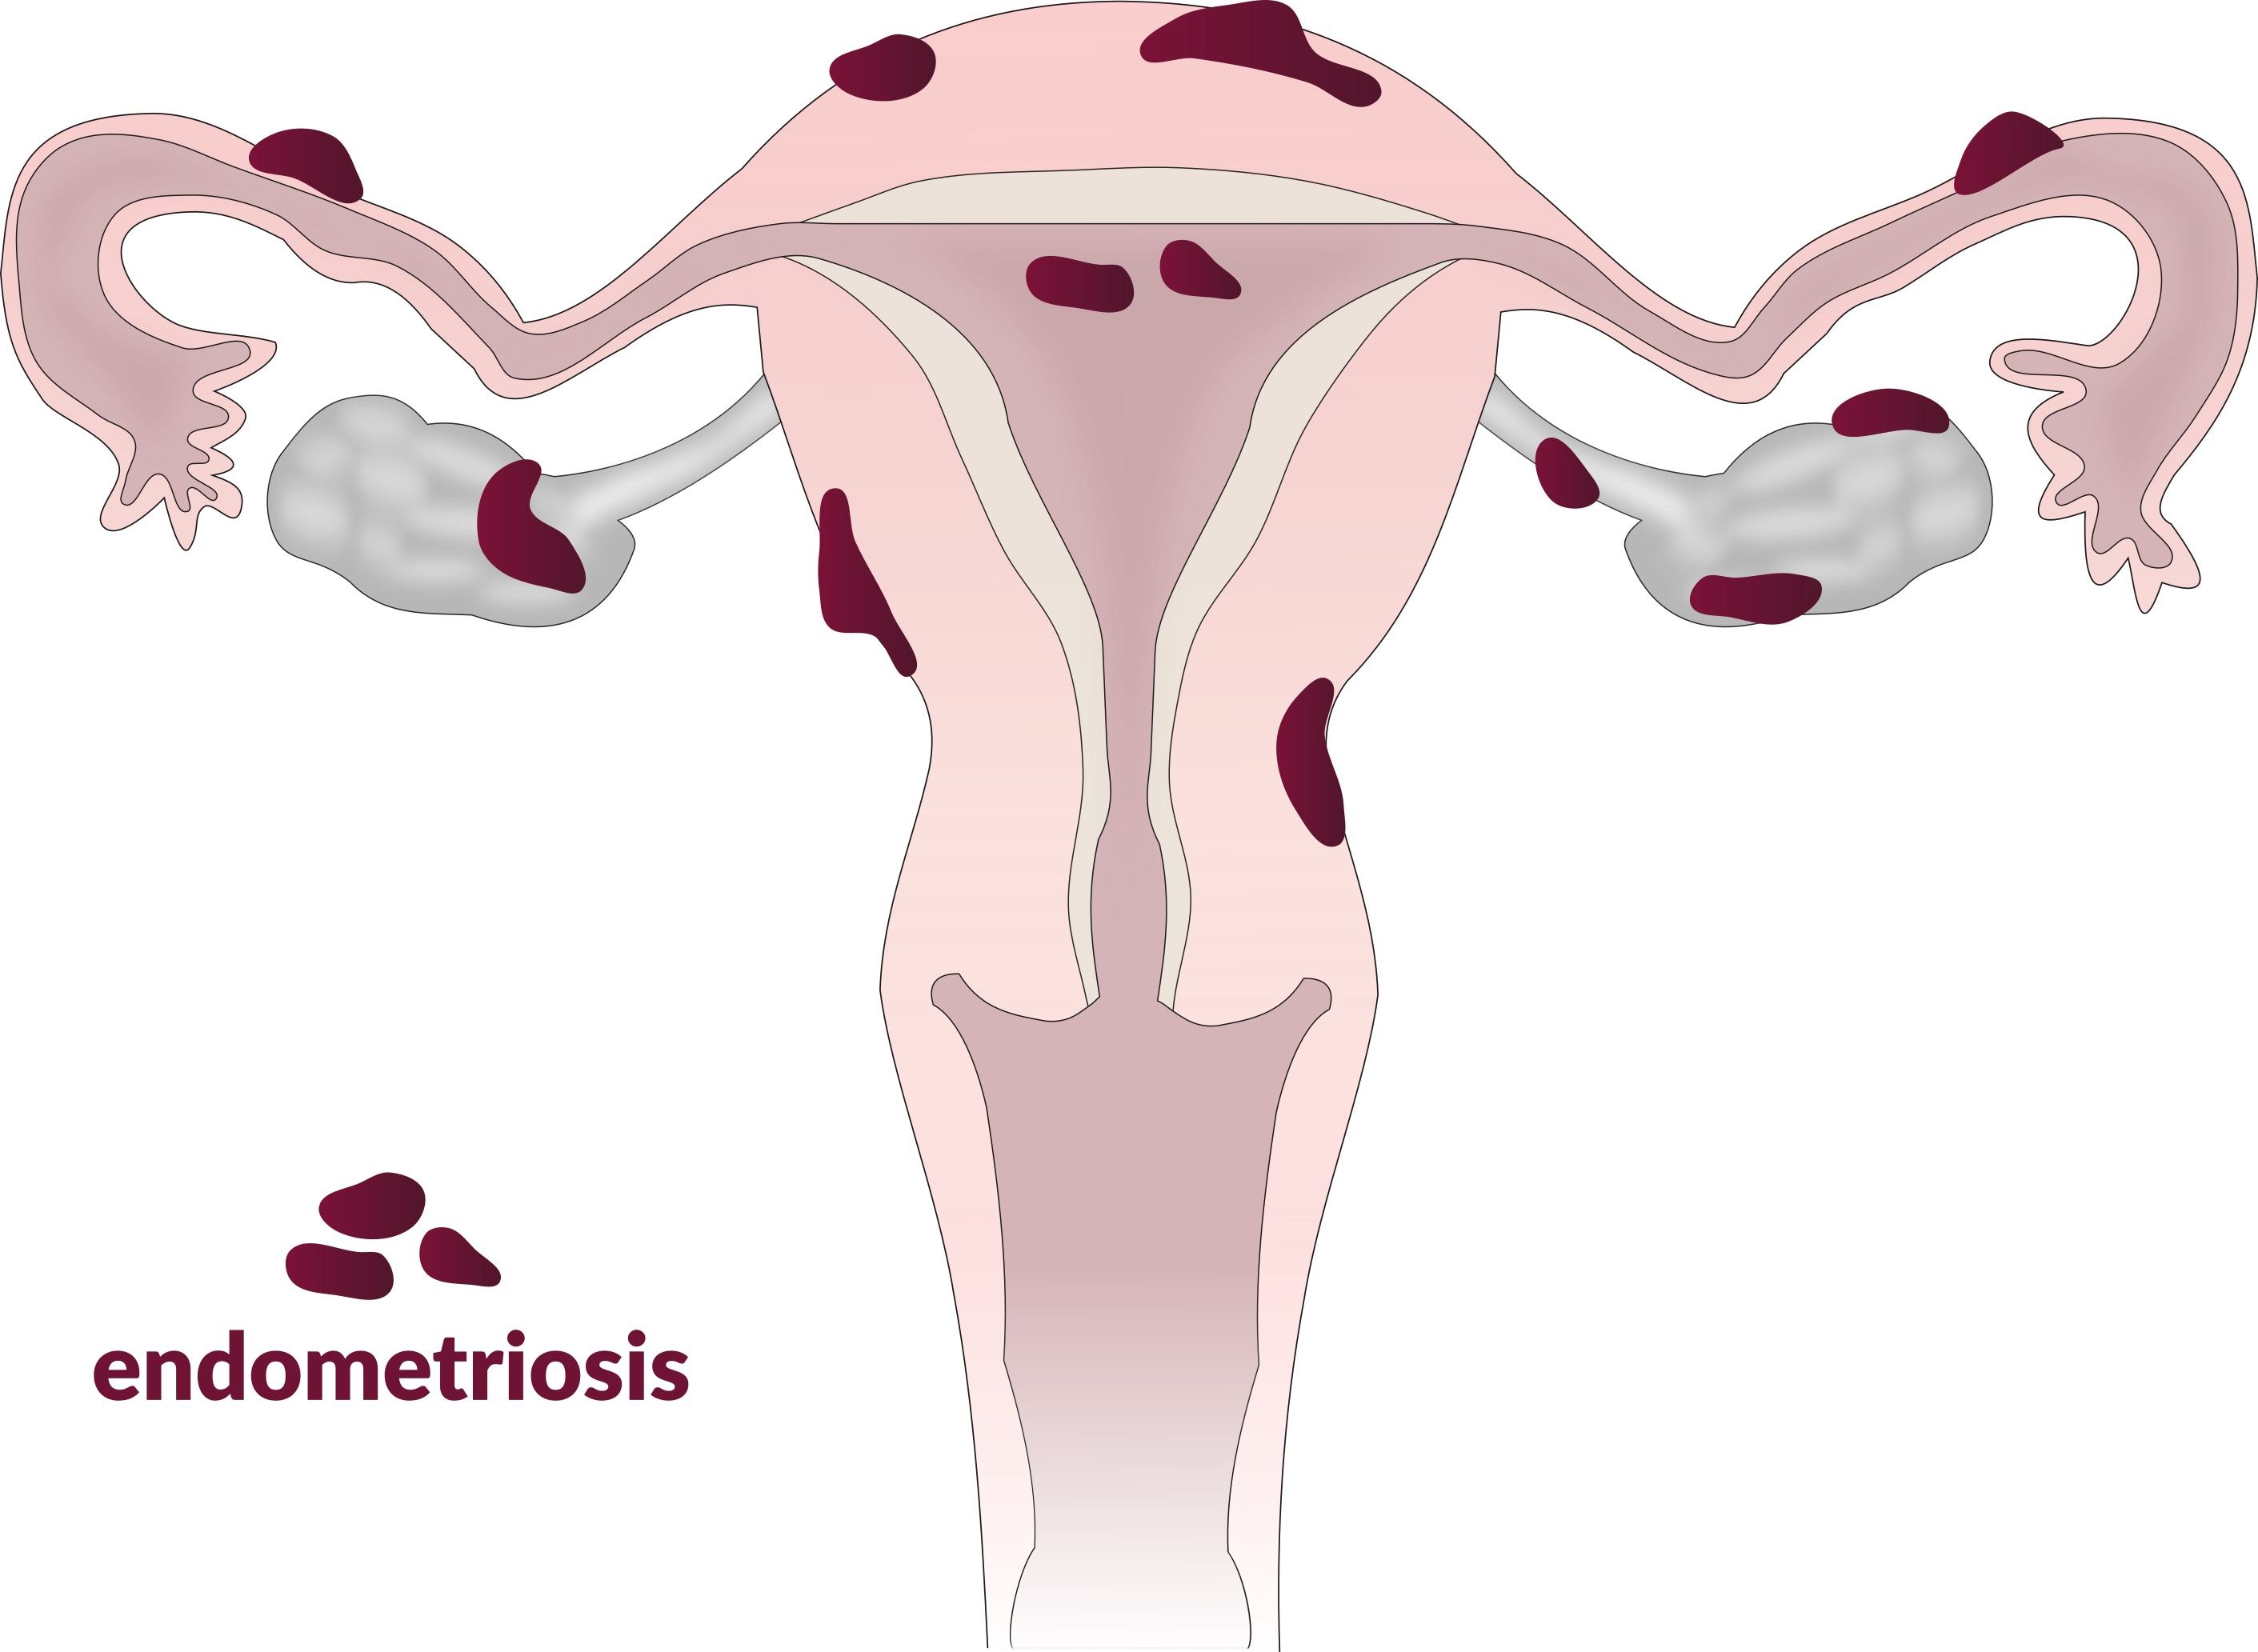 Il·lustració en què representa com pot afectar l'endometriosi. Font: Vega asensio (Wikimedia Commons)